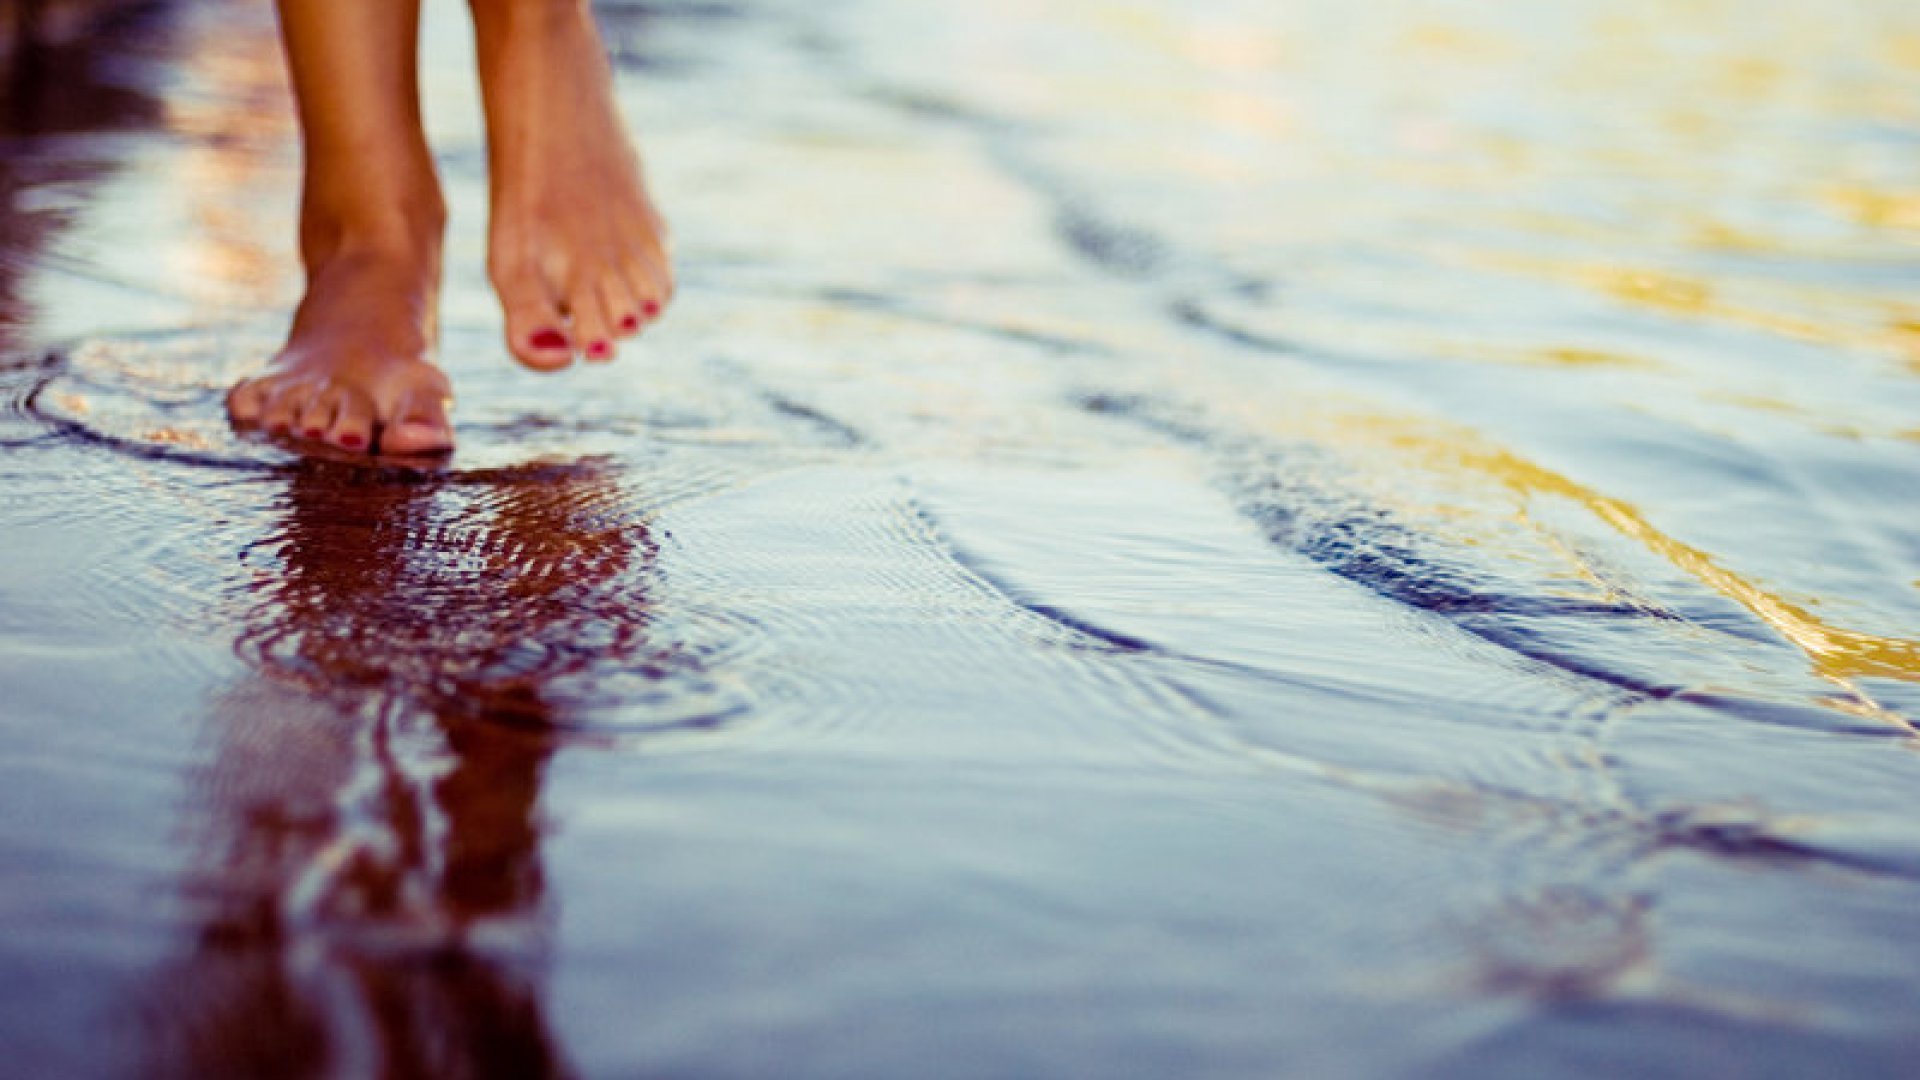 Ра ценить. Ноги по воде. Босые ноги в воде. Ноги в луже. Маленькими шагами к счастью.